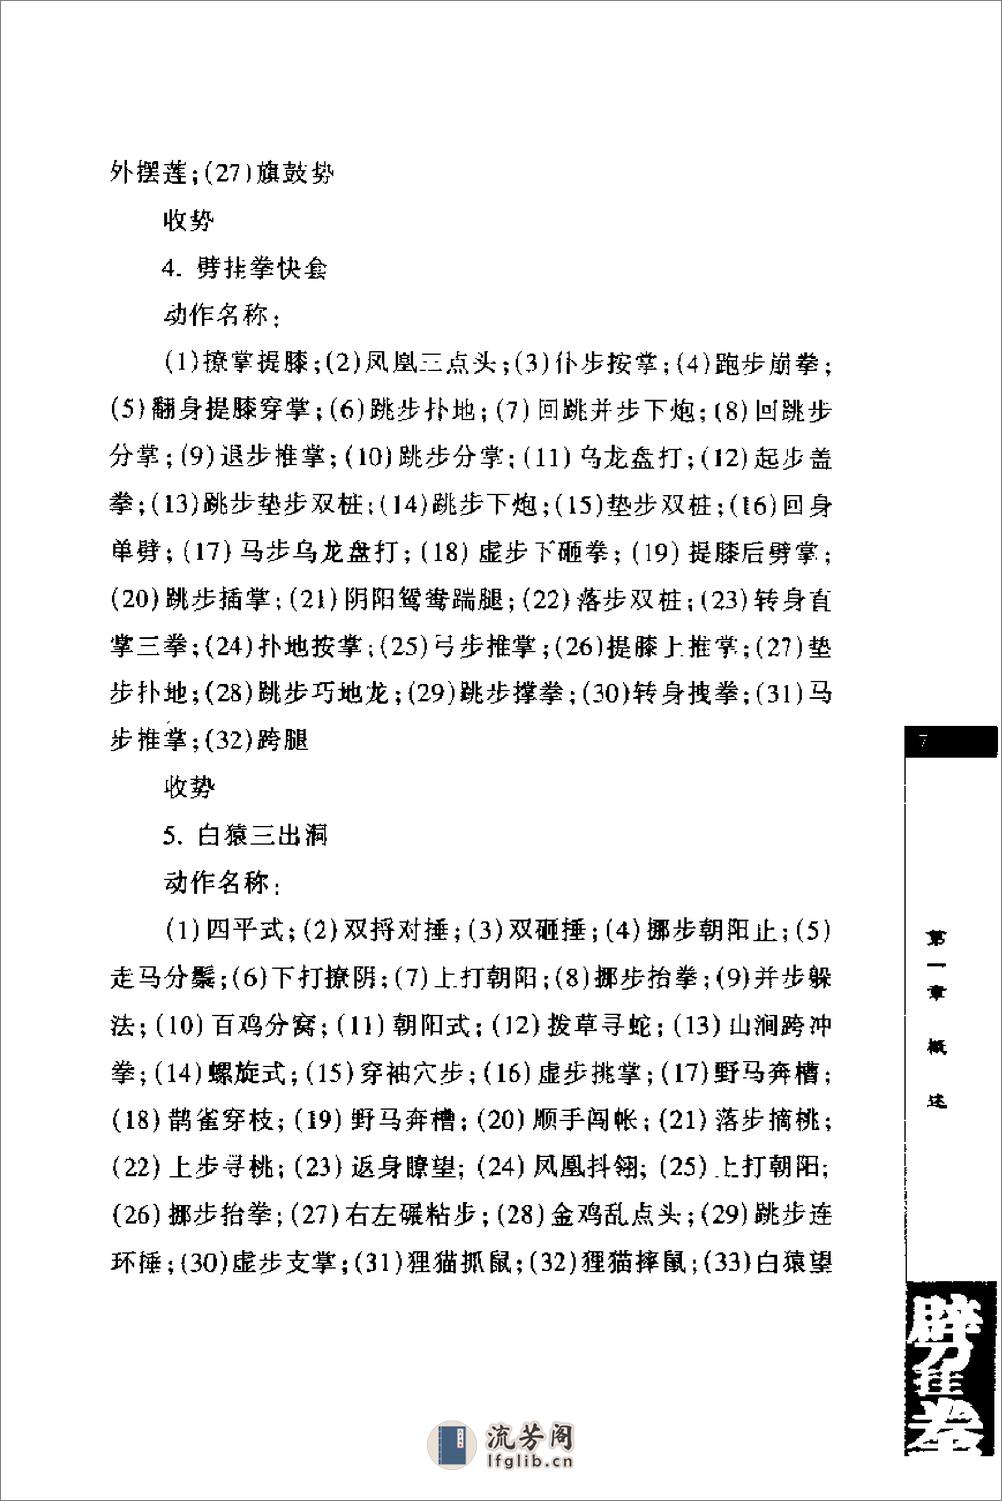 《劈挂拳》中国武术系列规定套路编写组 - 第13页预览图